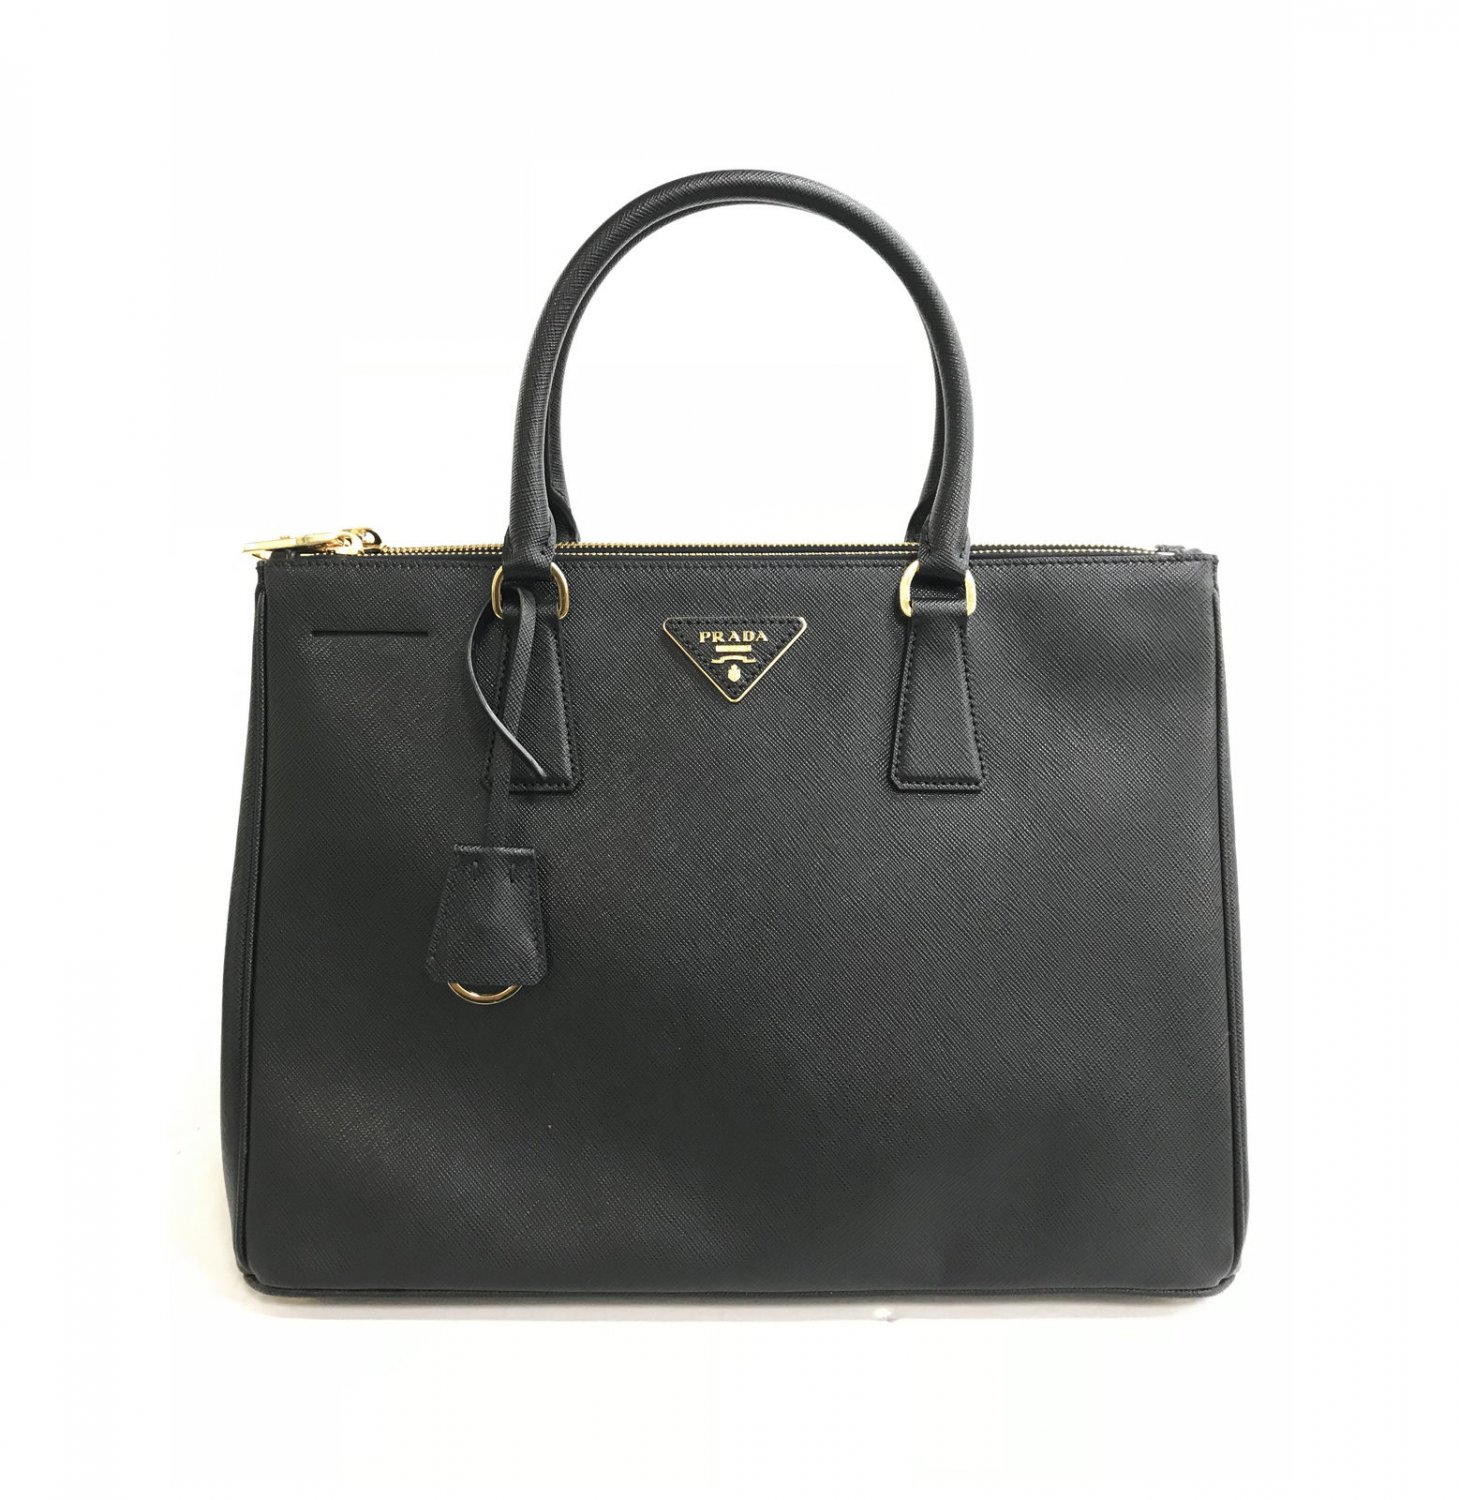 Prada Galleria Medium Saffiano Tote Black Leather Ladies Bag 1BA274 F0002